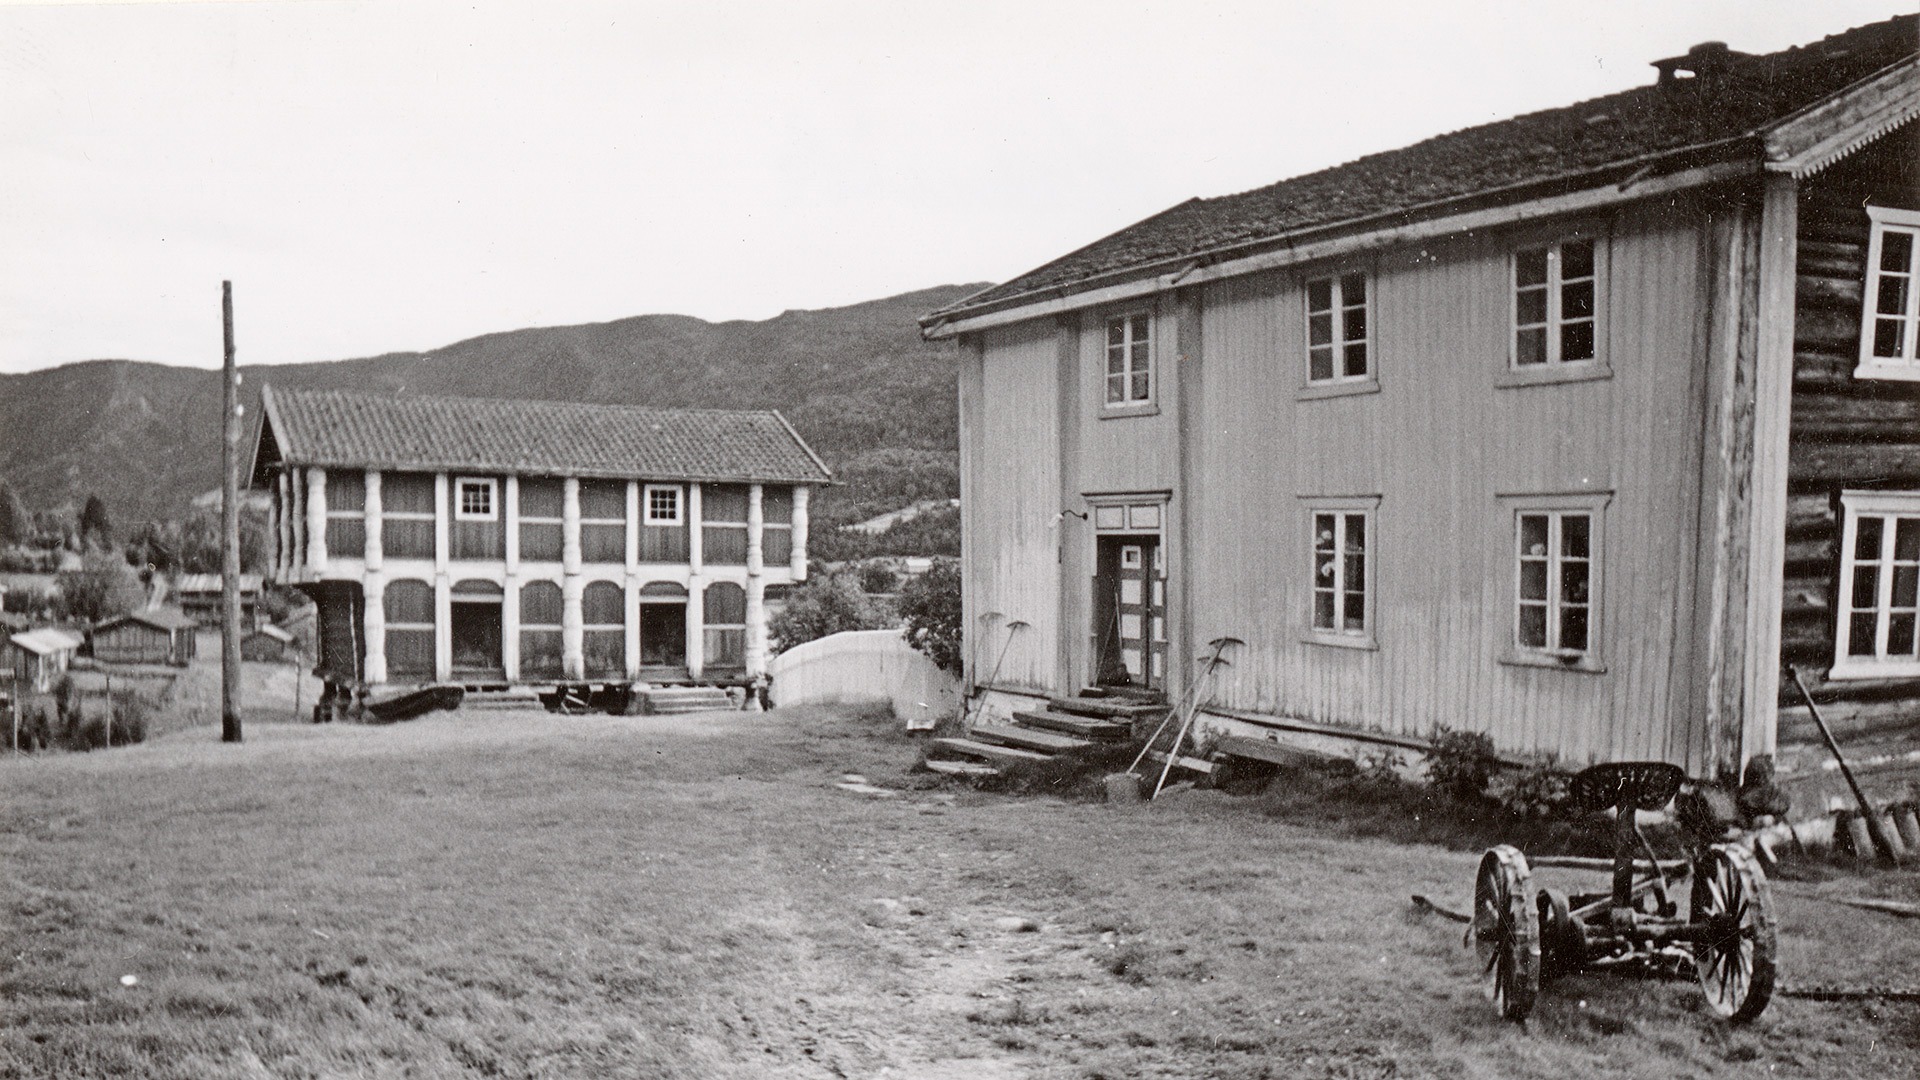 Kravik Mellom i første halvdel av 1900-tallet. Foto: Halvor Vreim (1895-1966) Riksantikvaren